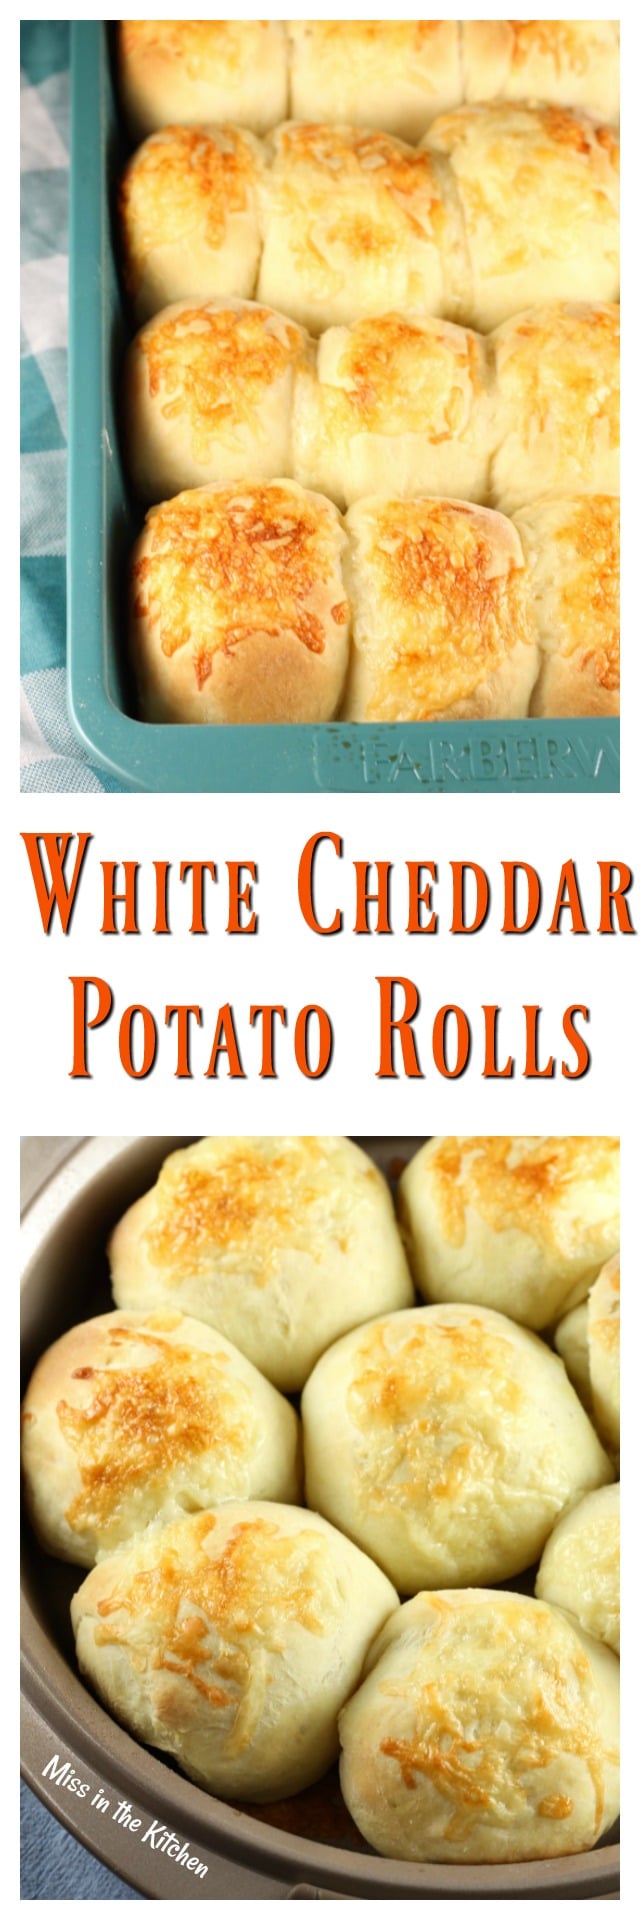 https://www.missinthekitchen.com/white-cheddar-potato-rolls/white-cheddar-potato-rolls-recipe-photo-collage/